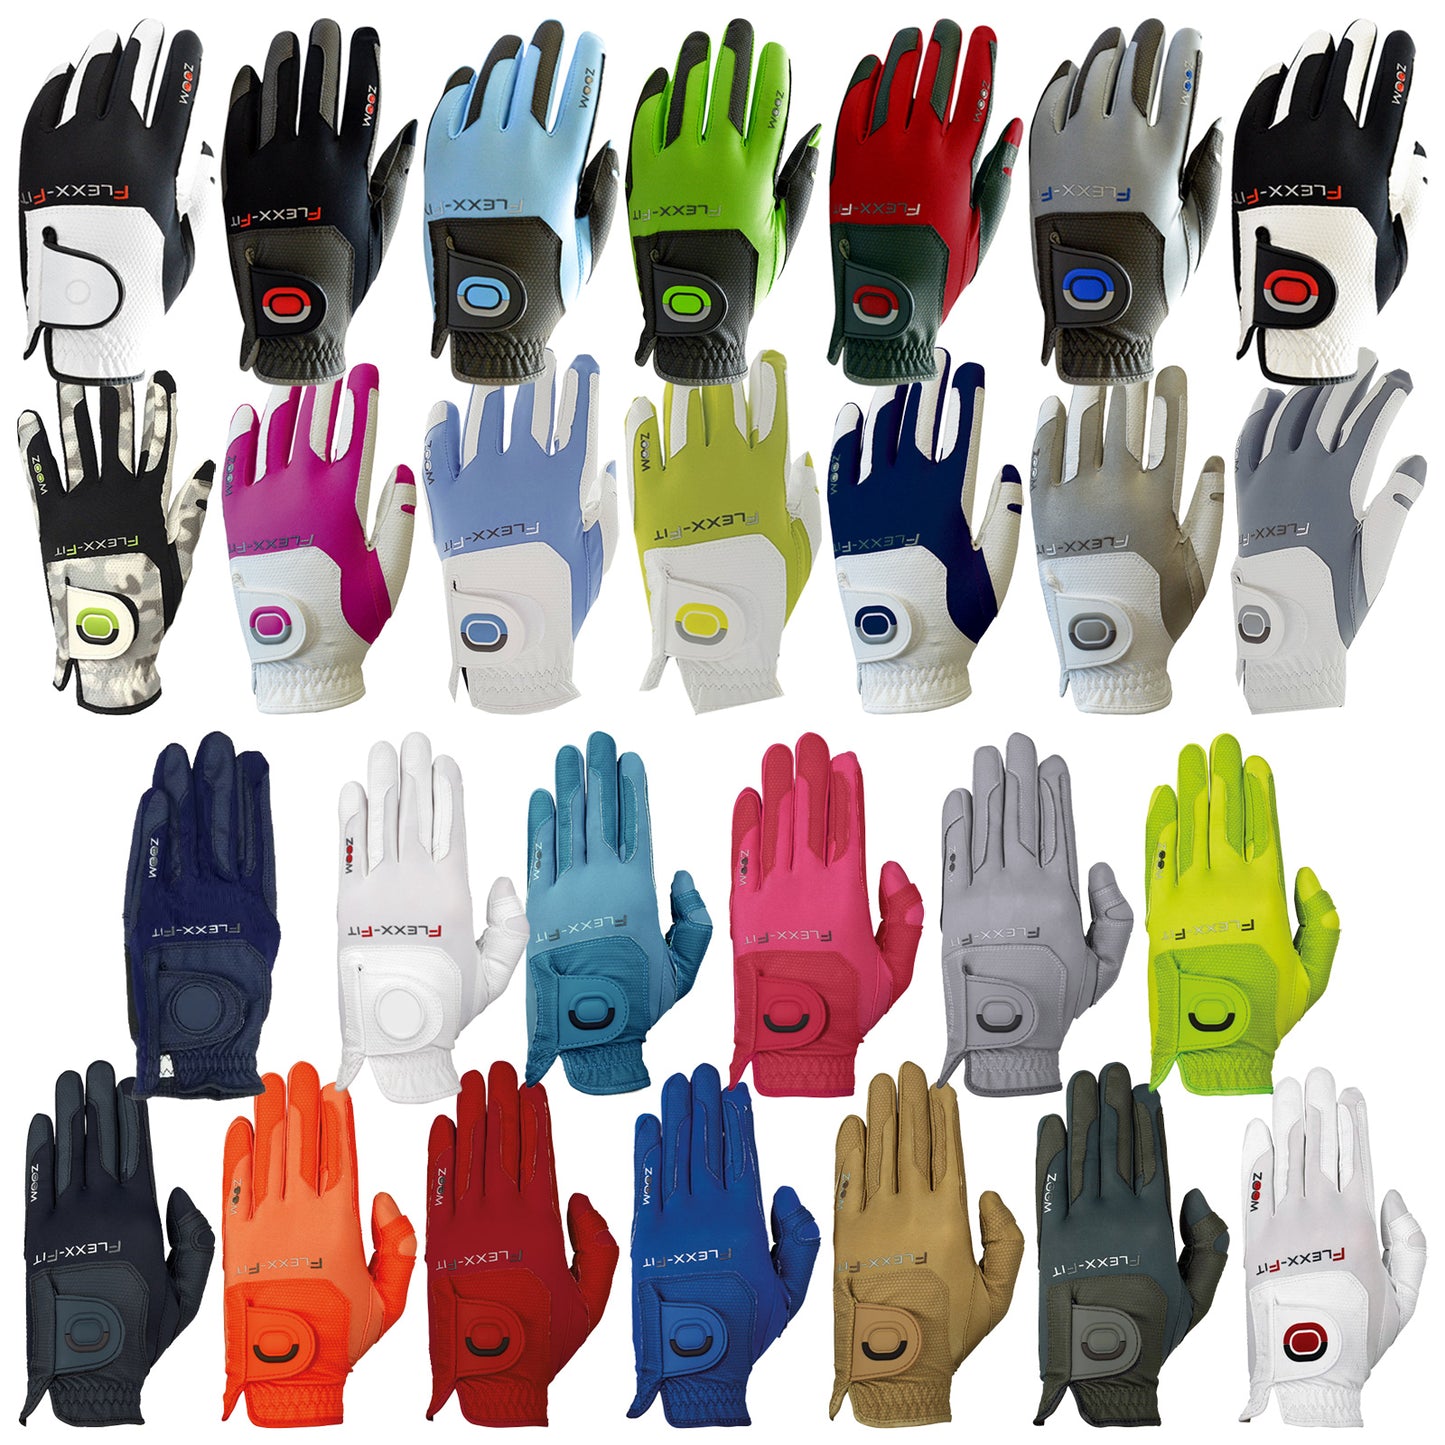 Zoom Ladies Left Hand Flexx Fit WEATHER Golf Glove - One Size